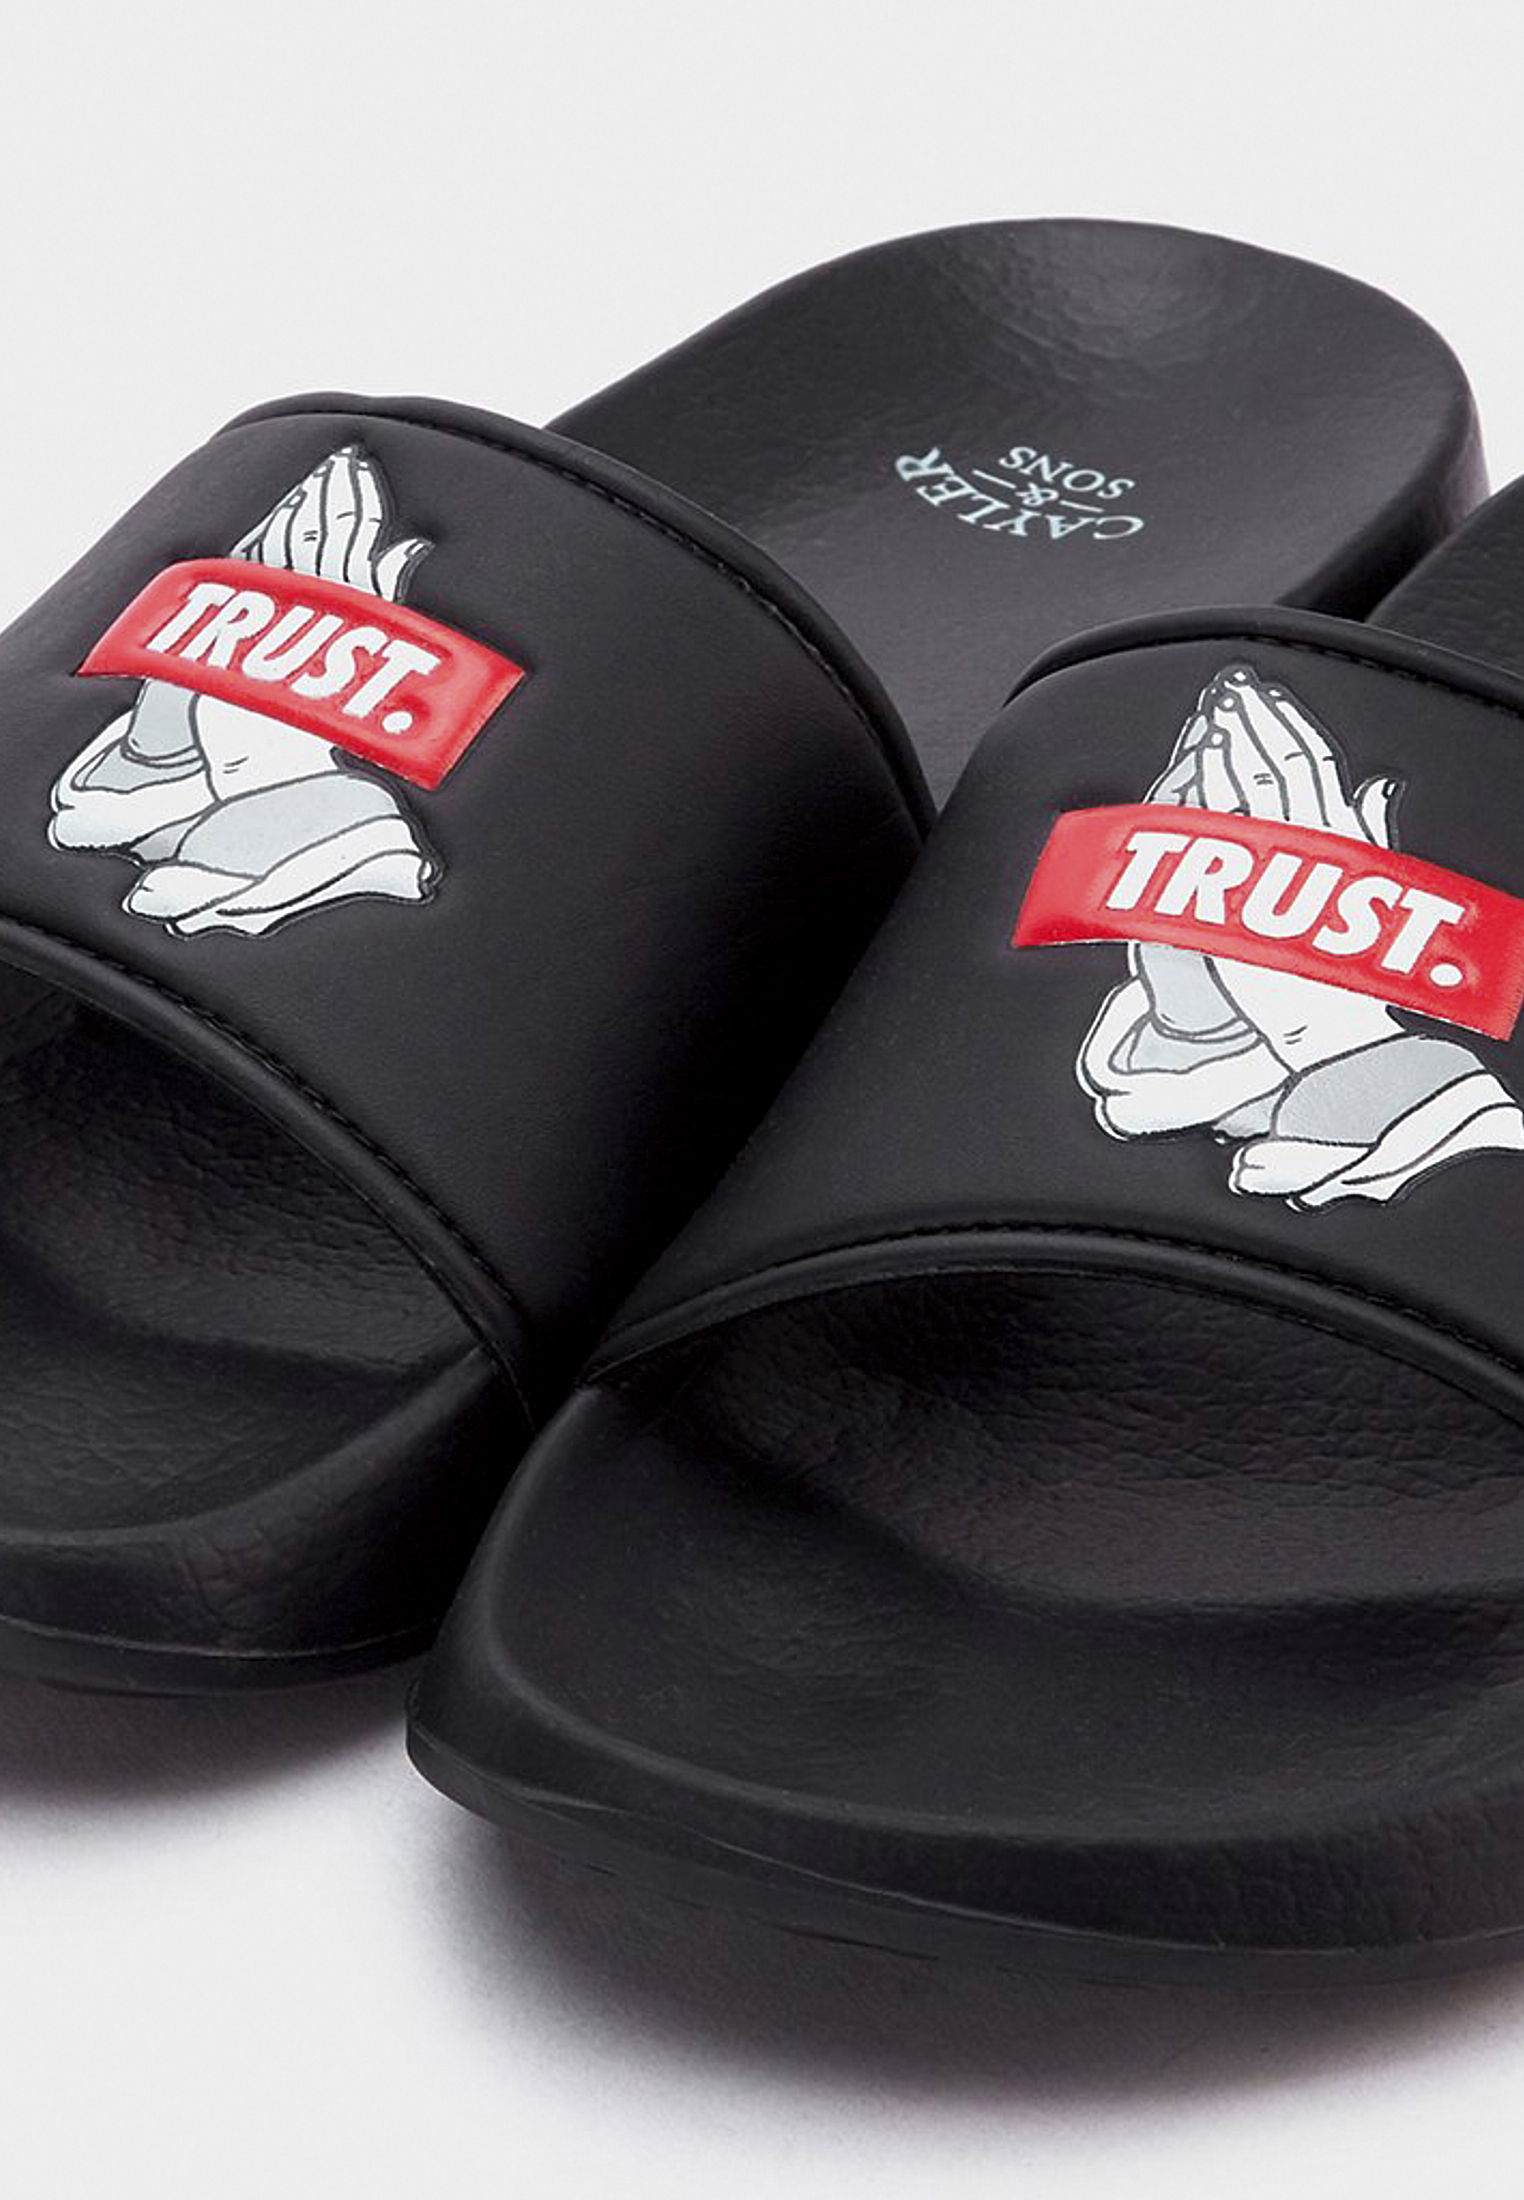 Accessoires C&S WL Trust Sandals in Farbe black/mc